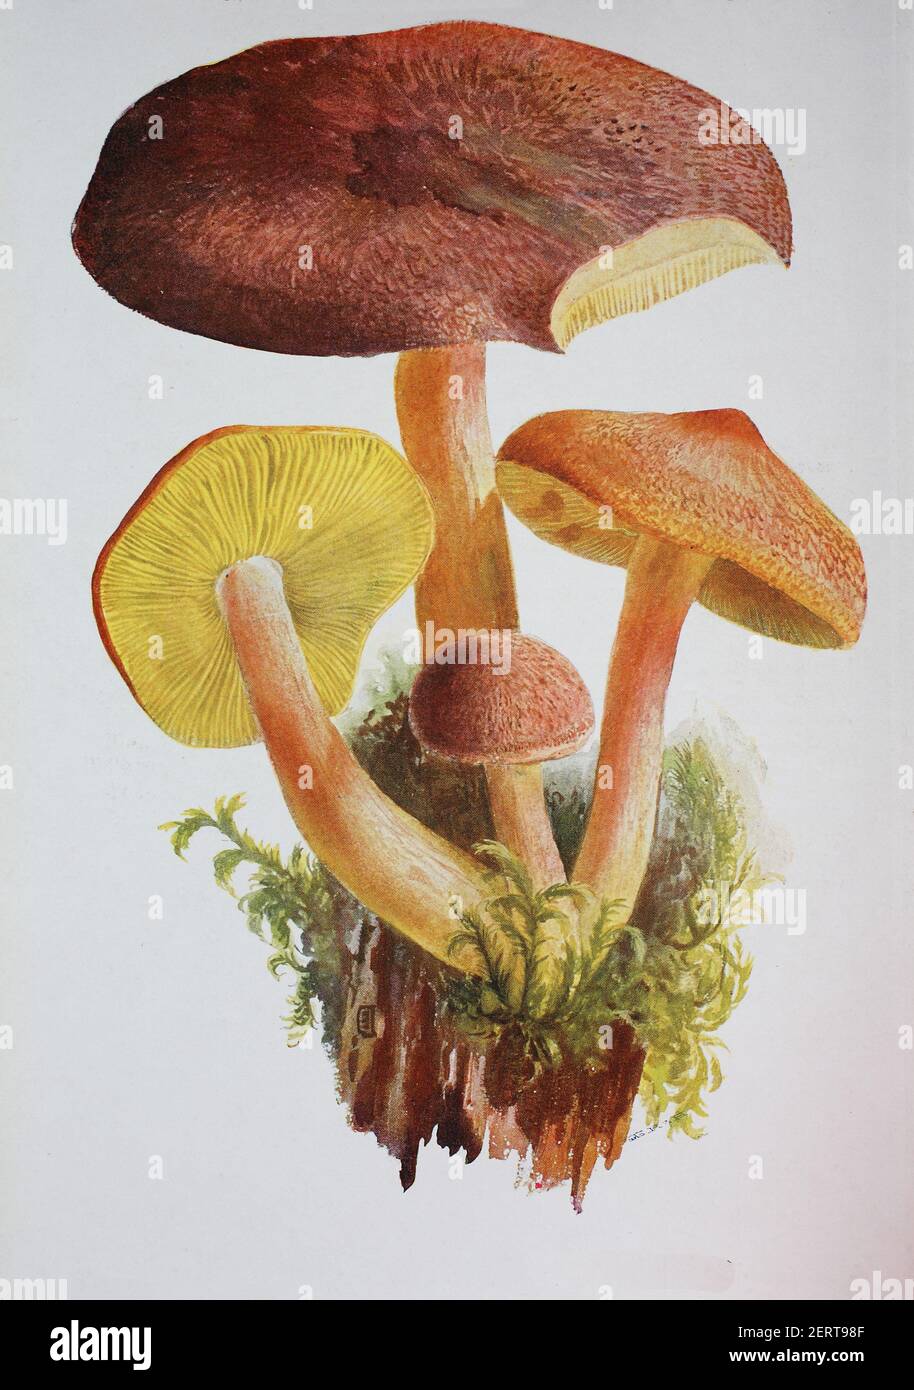 Le Tricholomopsis rutilans, connu sous le nom commun inhabituel mais approprié de Plums et de Custard ou, moins couramment agaric à cheveux rouges, est une espèce de champignon à volants que l'on trouve en Europe et en Amérique du Nord, reproduction numérique d'une ilustration d'Emil Doerstling (1859-1940) Banque D'Images